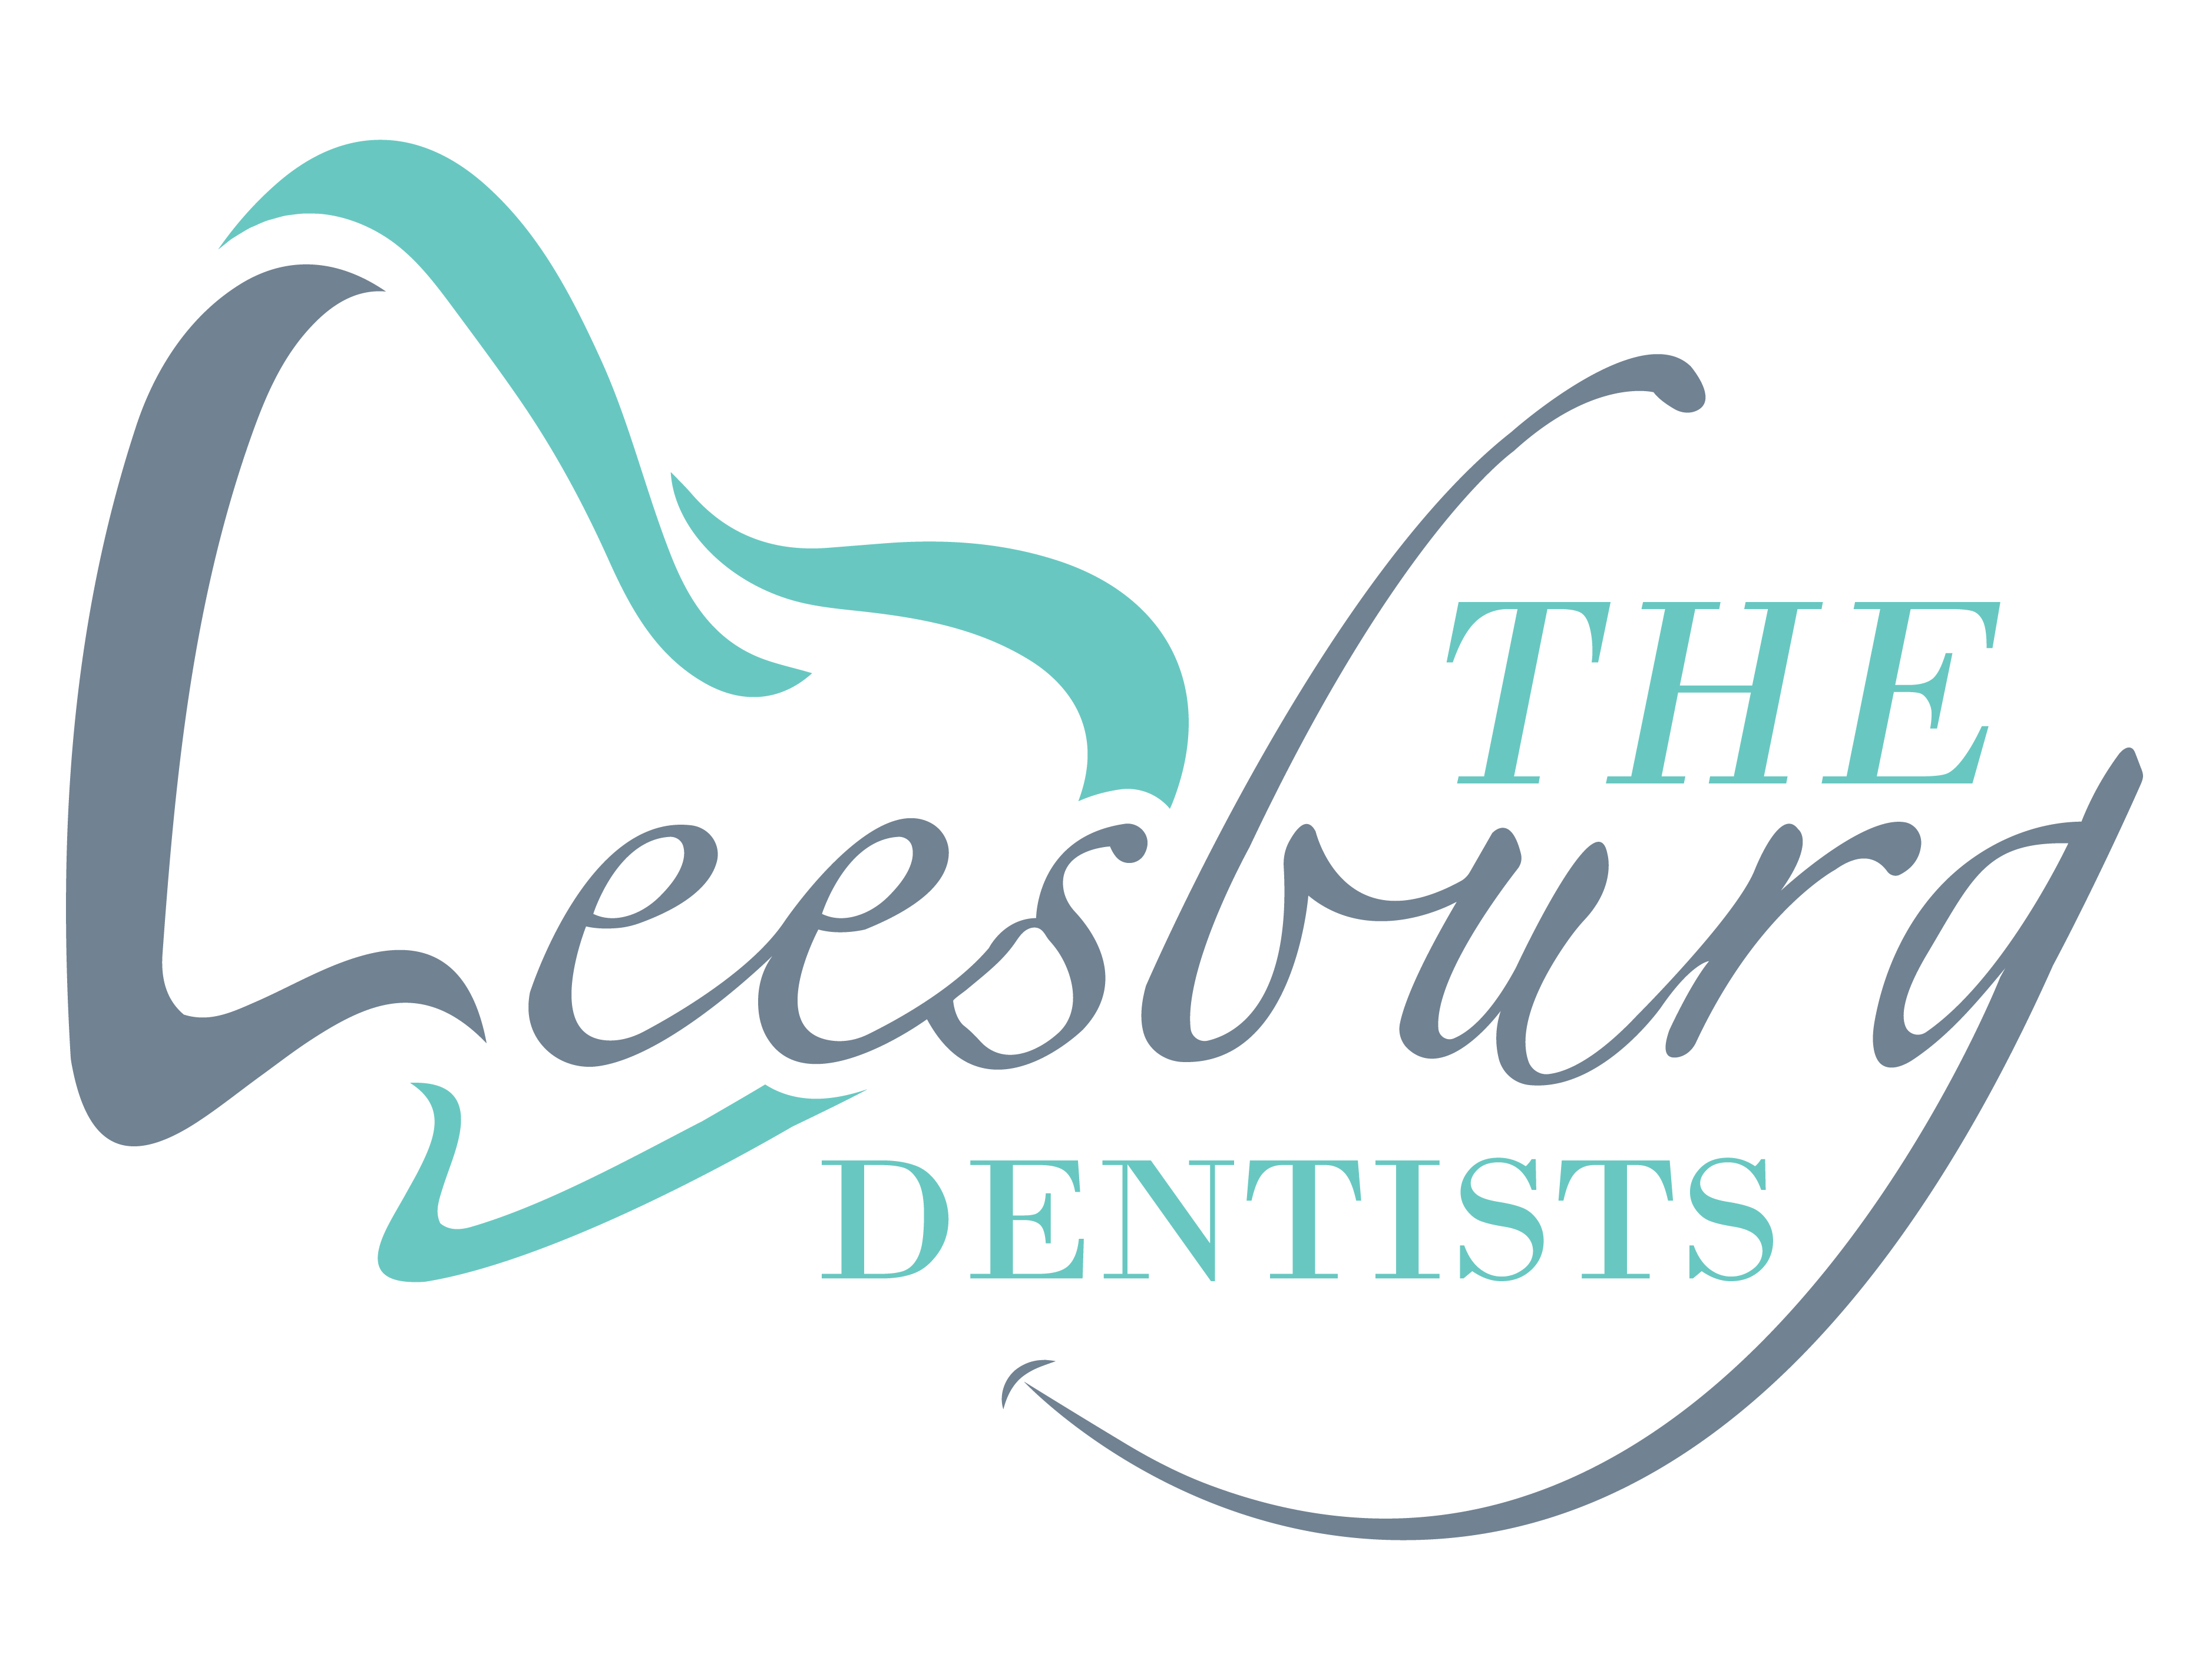 Leesburg Dentists